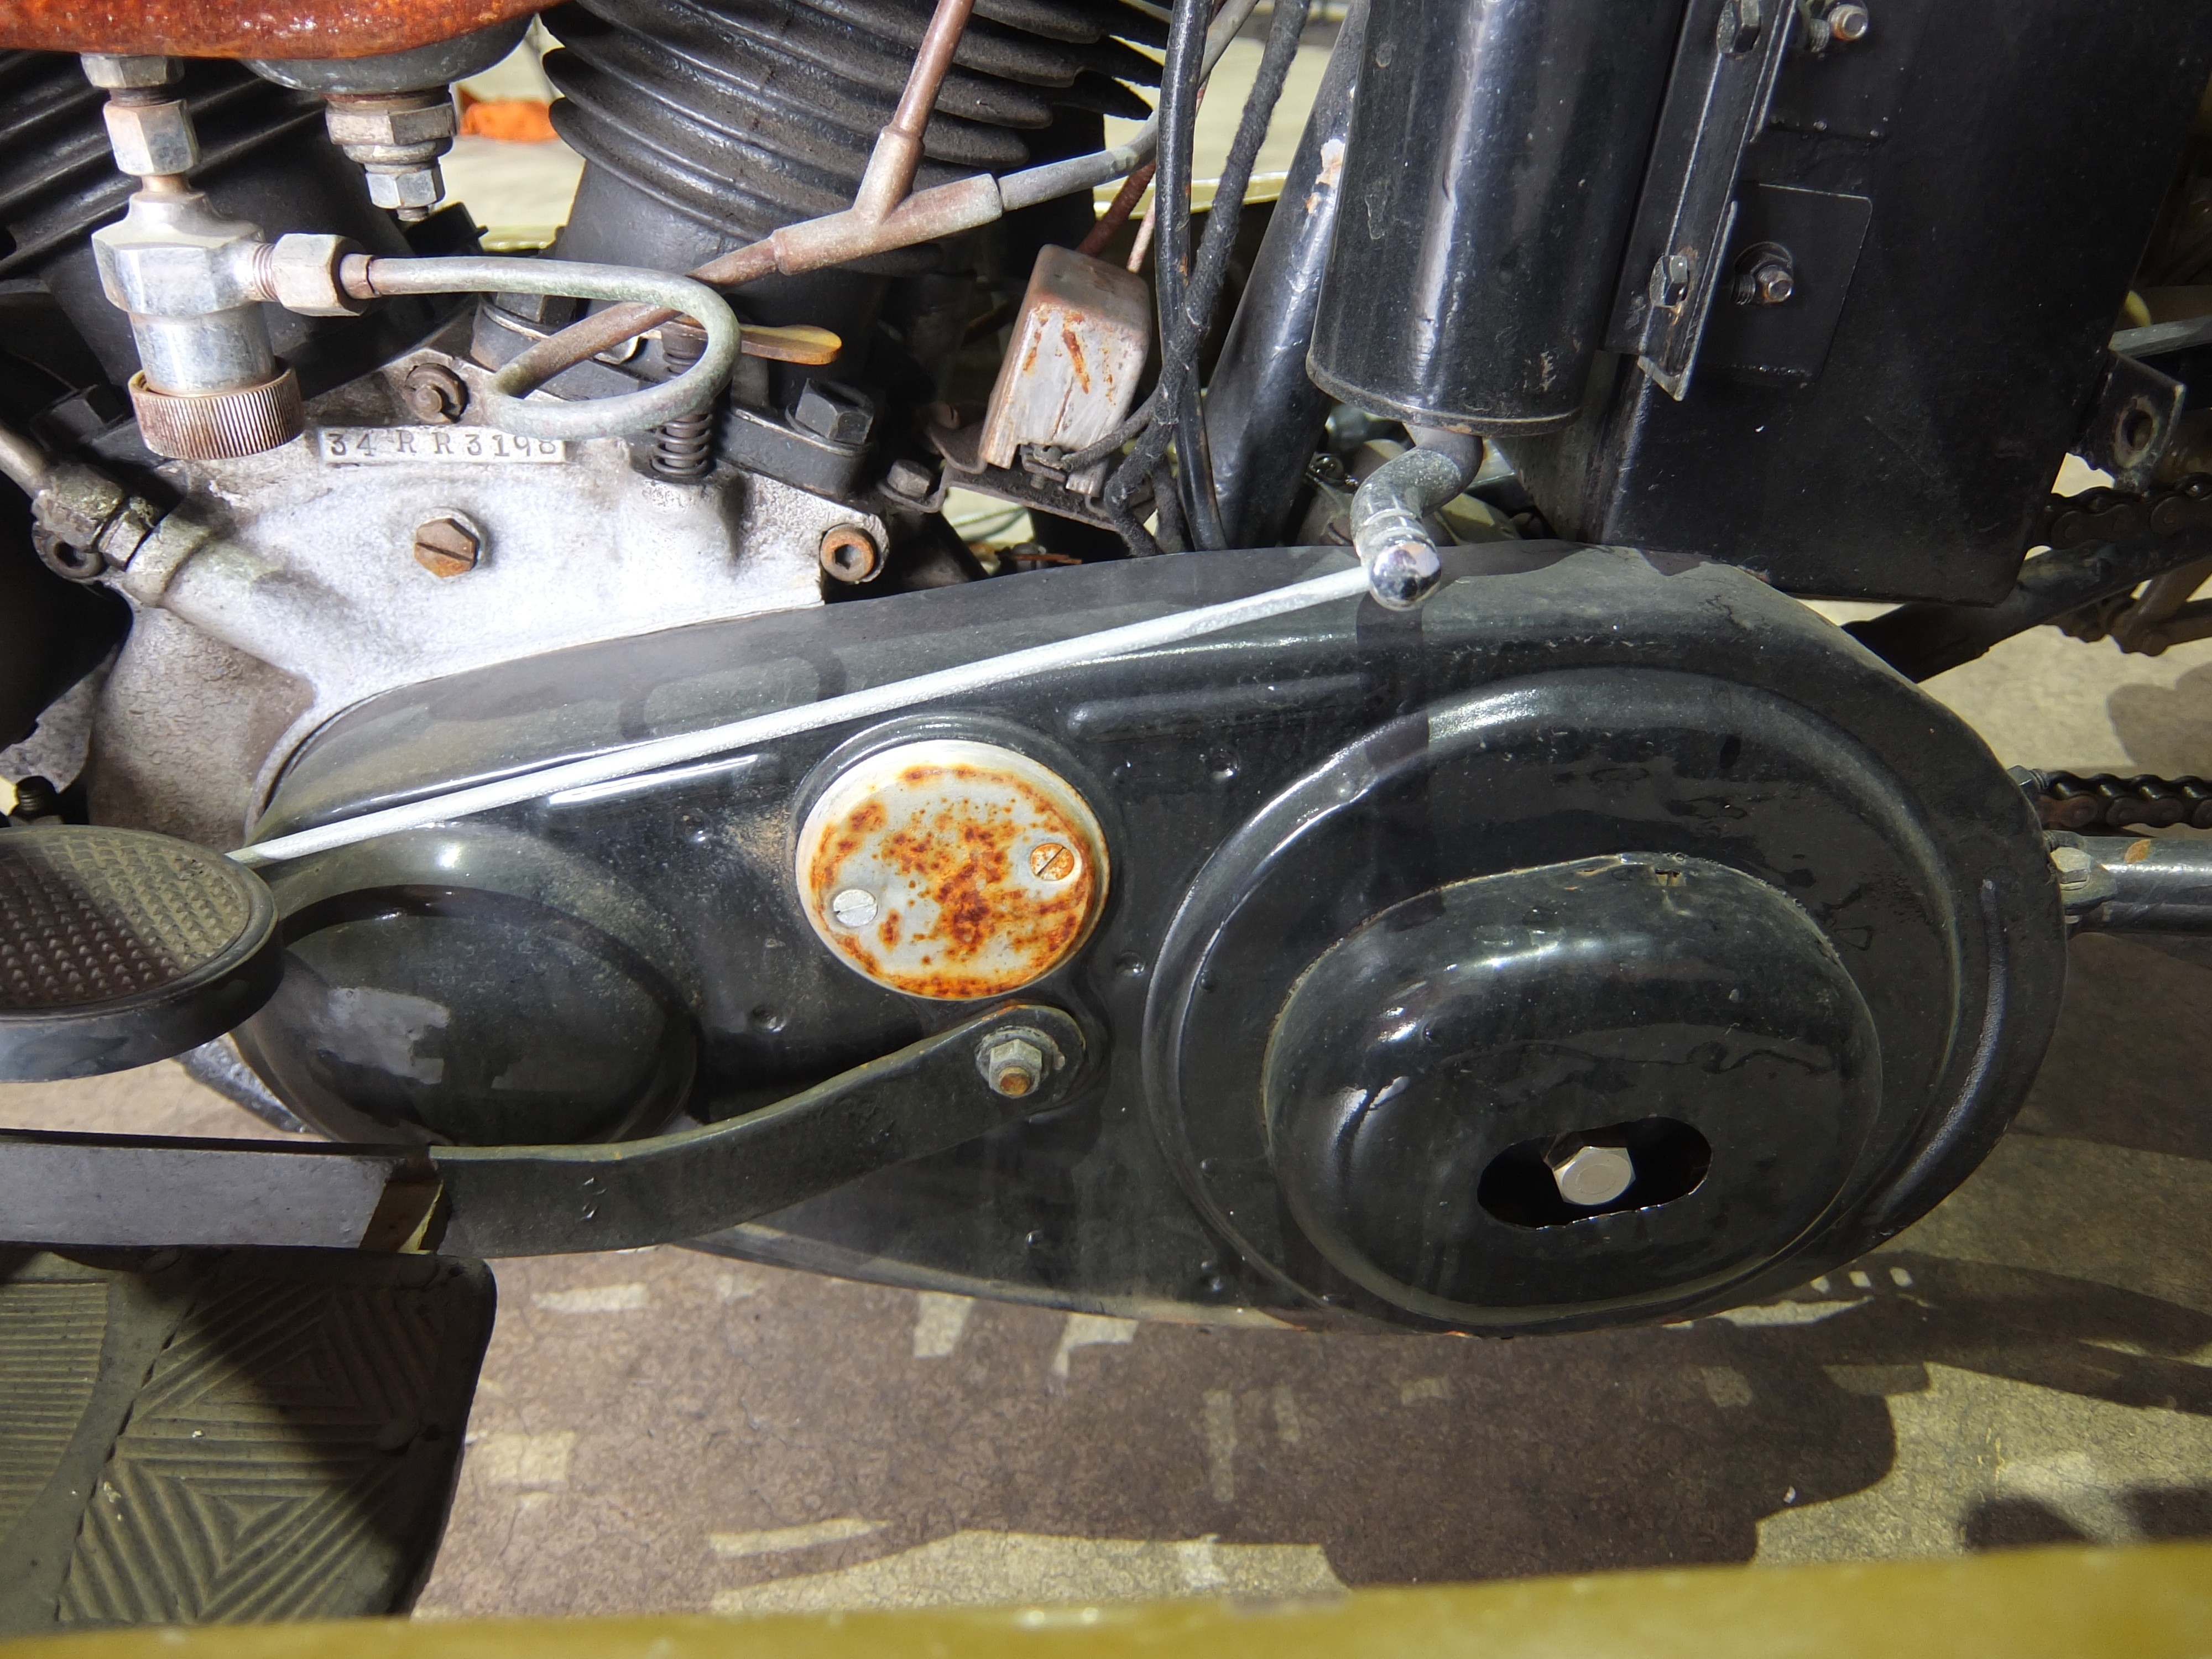 エンジン番号34Rは1934年モデル45 ci サイドバルブエンジンであることを示します